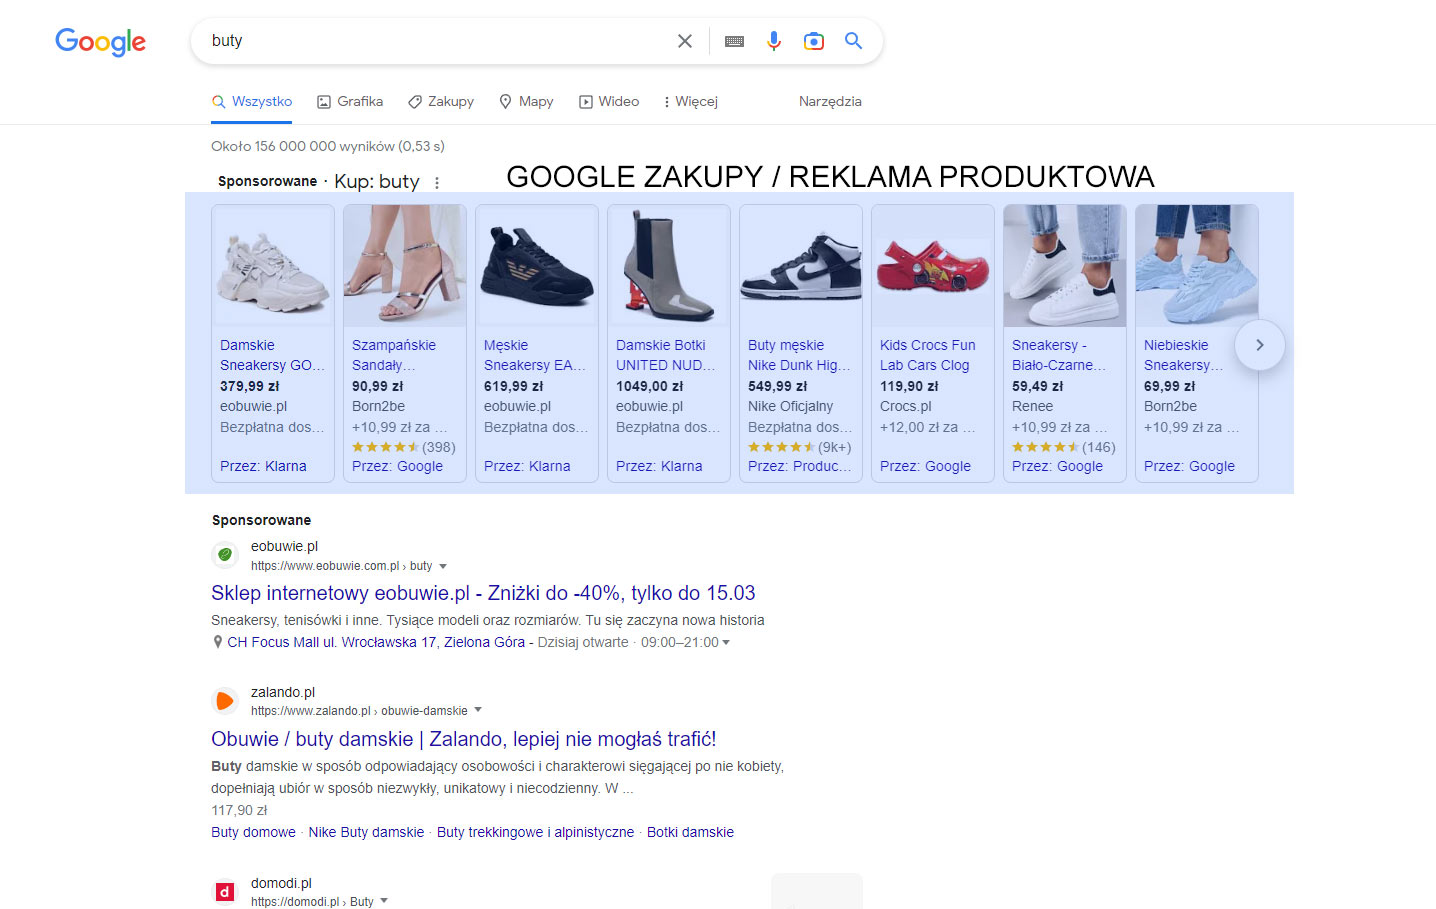 Google Zakupy